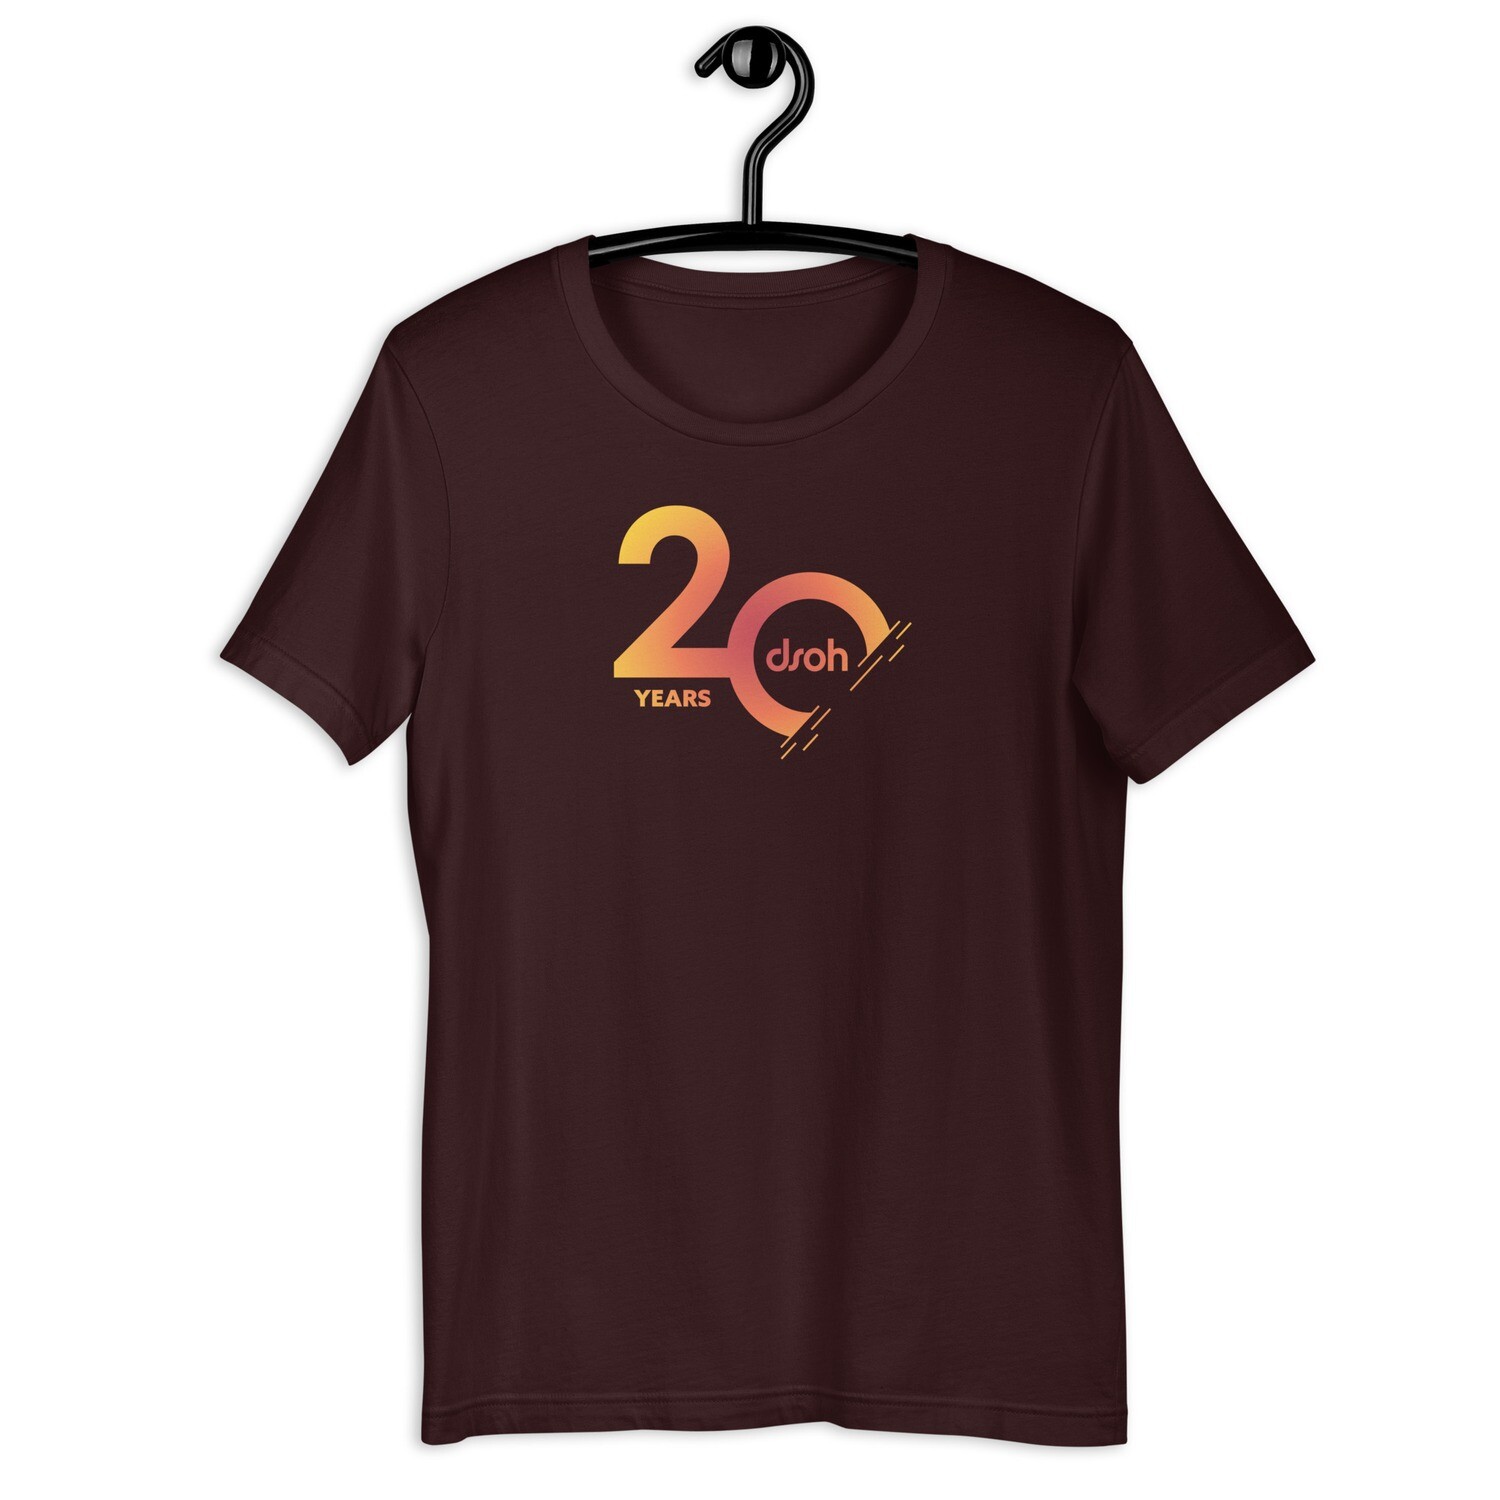 20 YEARS DSOH Unisex T-Shirt